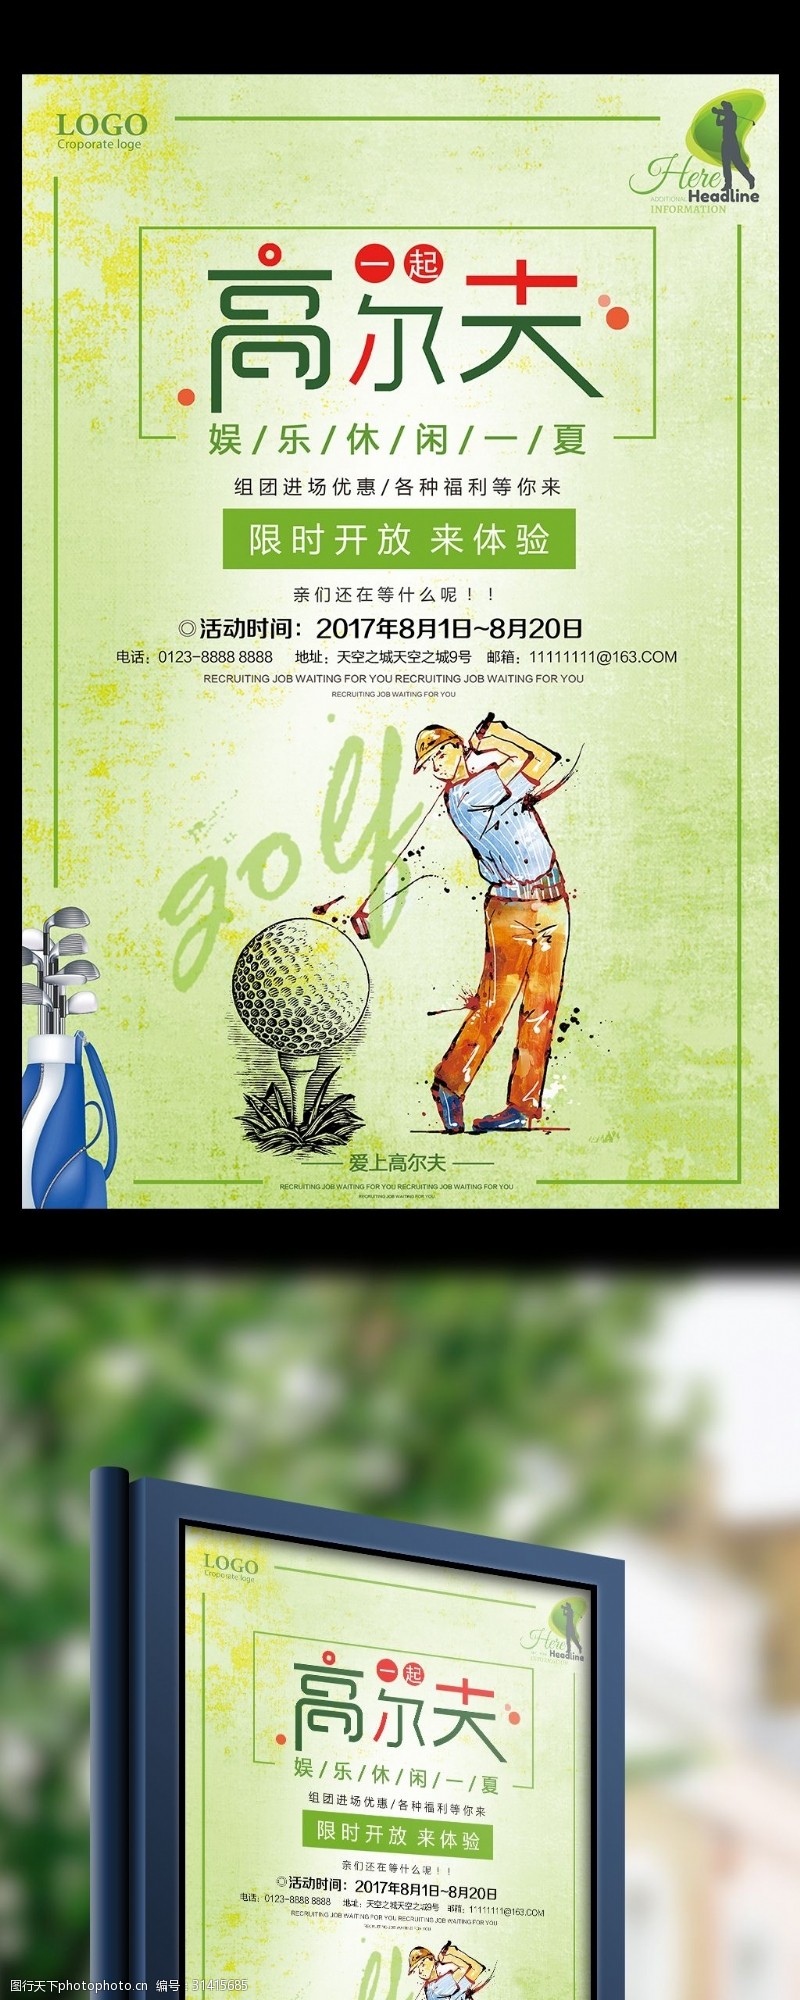 打高尔夫高尔夫限时宣传促销海报